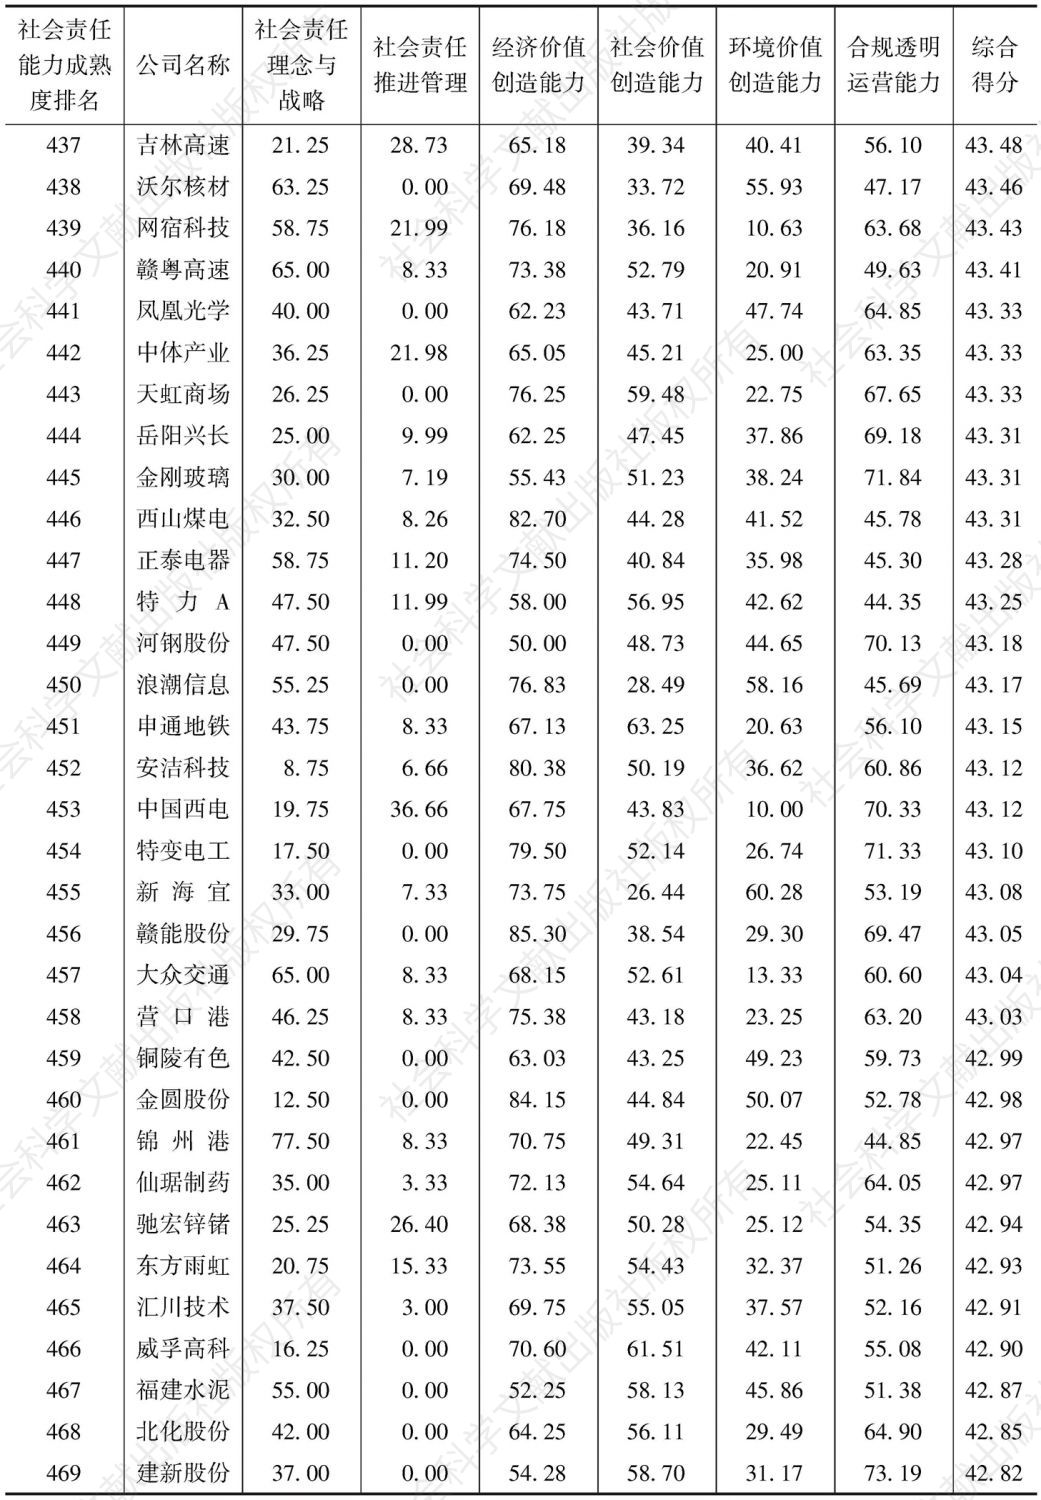 中国上市公司社会责任能力成熟度指数（2016）-续表14